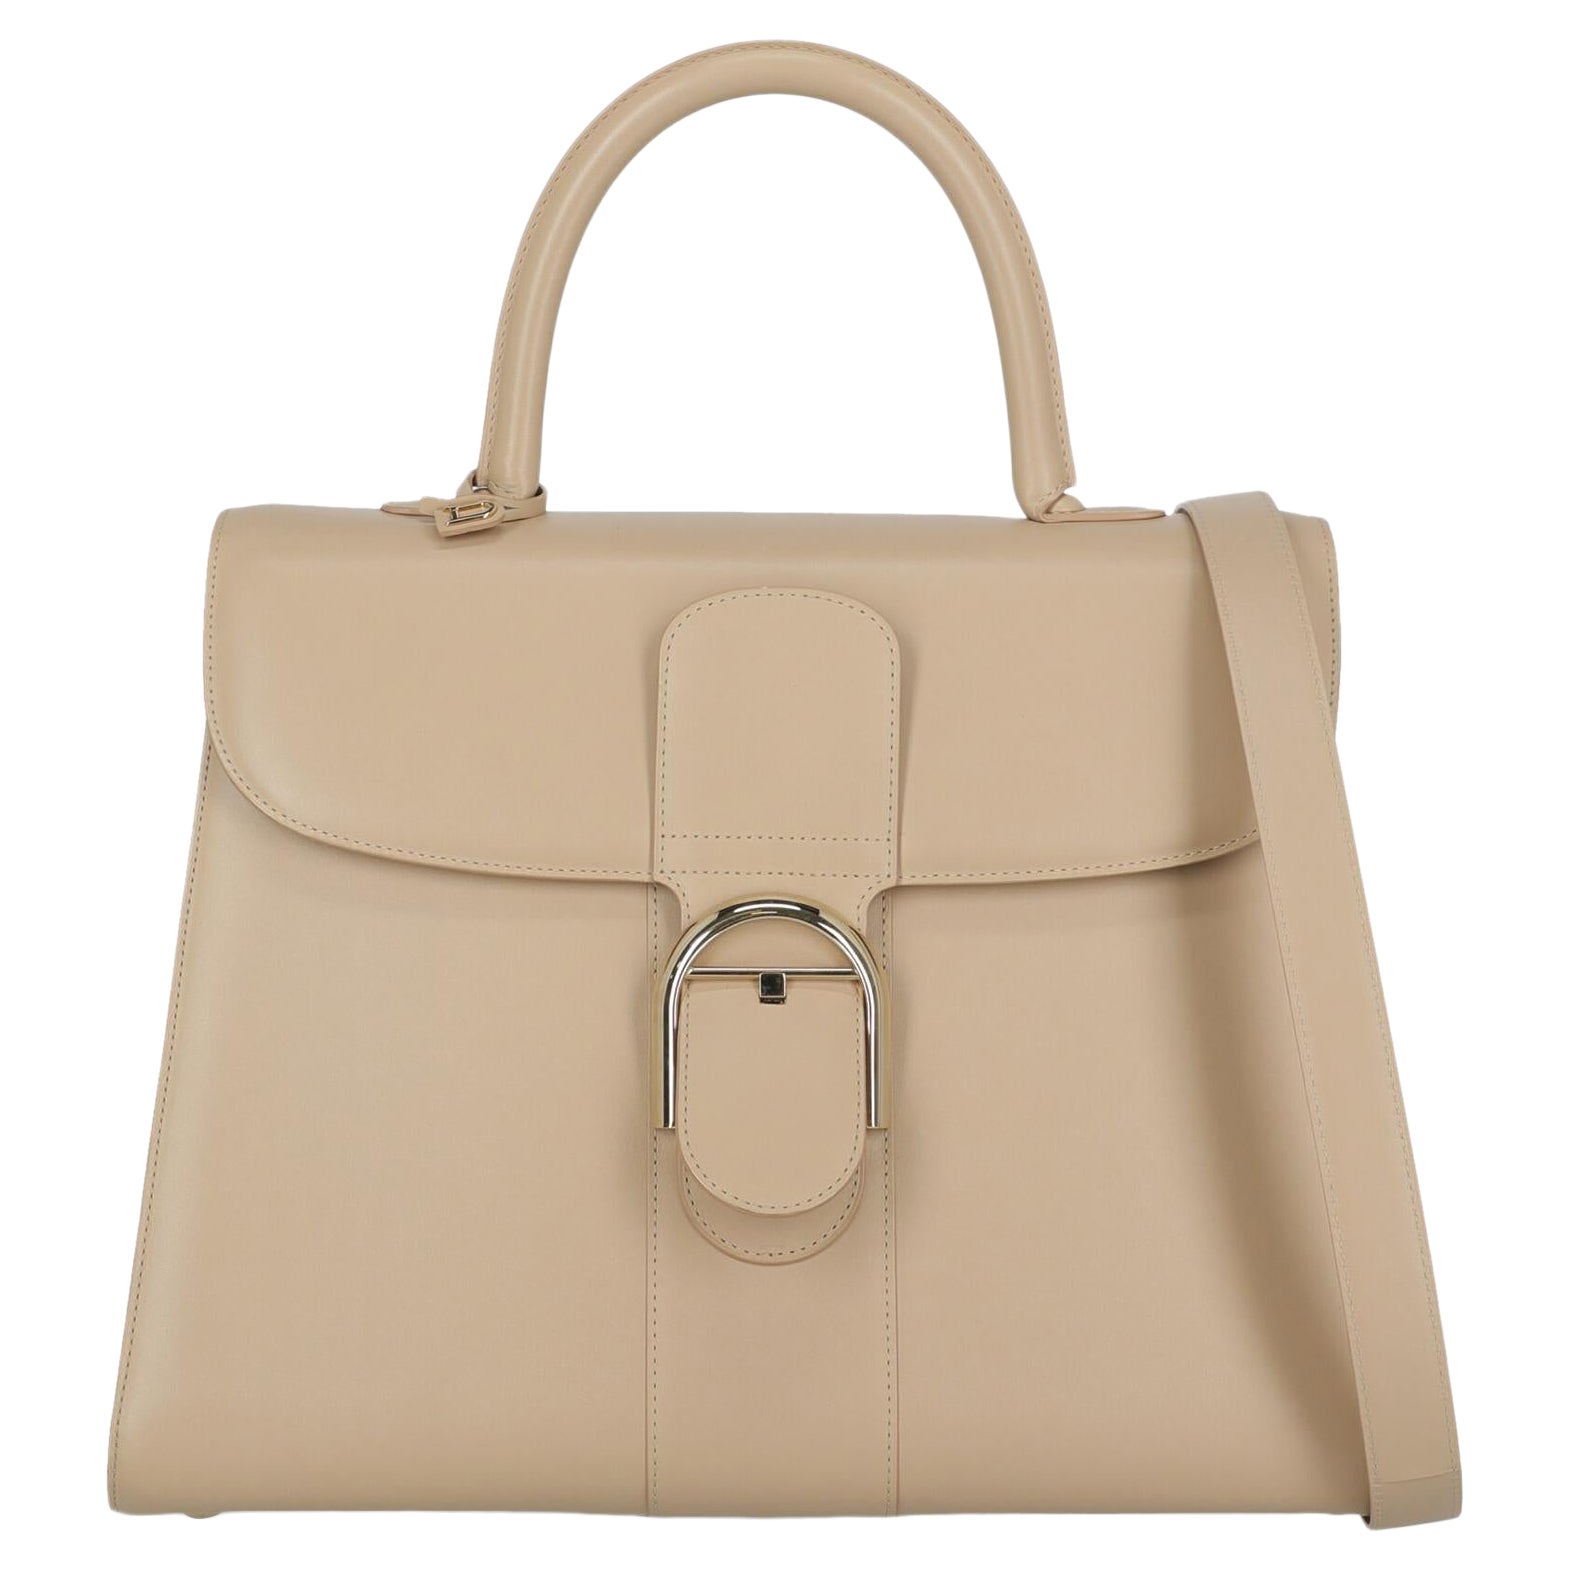 "Delvaux Women Handbags Beige Leather " For Sale